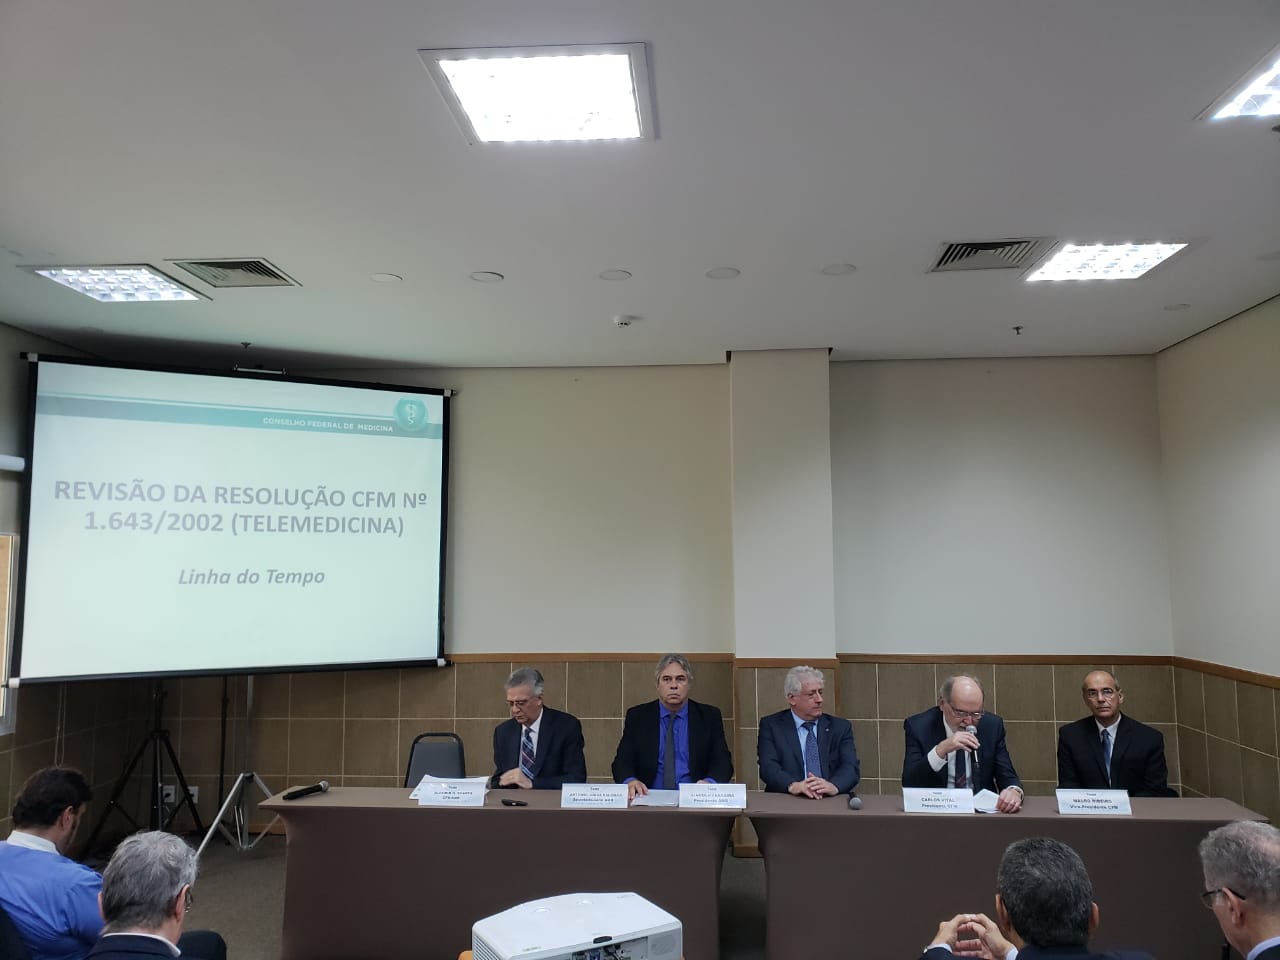 Na reunião, os representantes das entidades médicas definiram que que a Associação Médica Brasileira (AMB) receberá as contribuições das instituições para aperfeiçoamento da norma